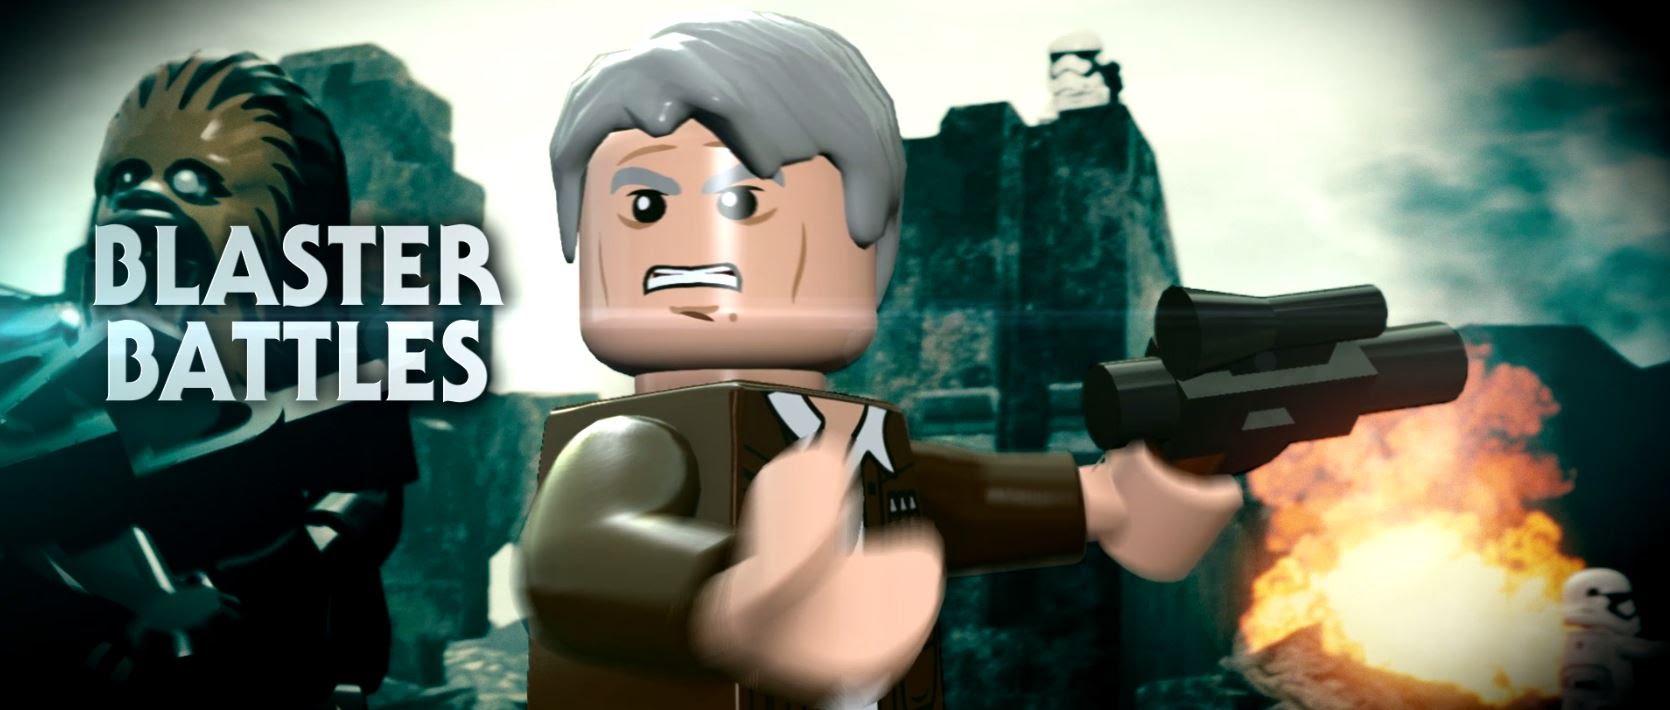 LEGO Star Wars: The Force Awakens | Blaster Battles